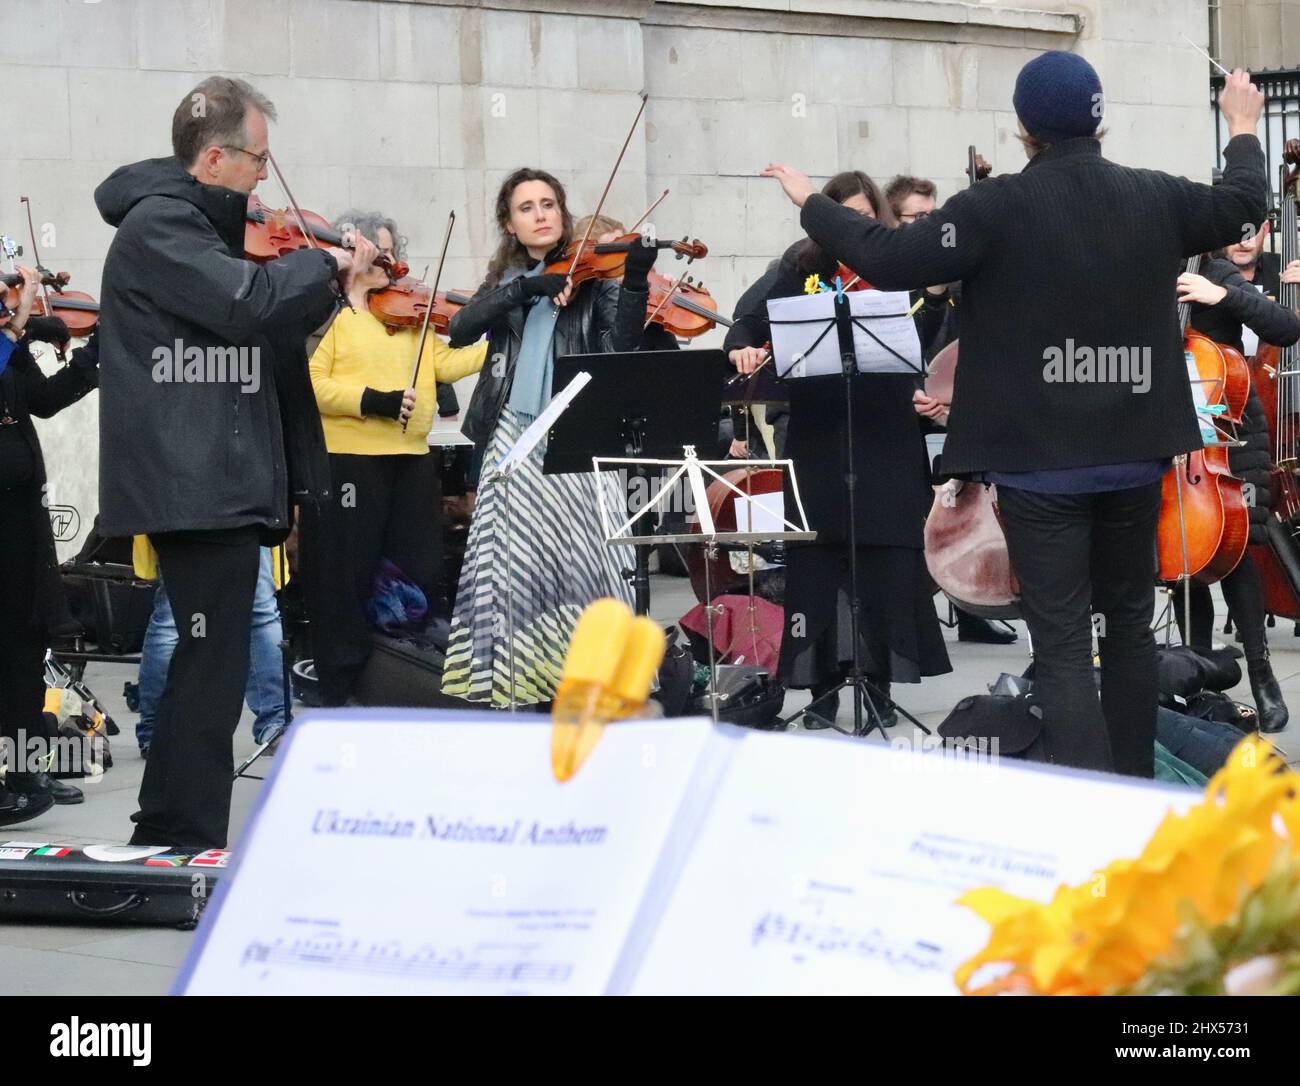 La flashmob orchestrale « Music for Peace » se joue lors d'une manifestation contre l'invasion de l'Ukraine par la Russie 06/03/22 - Londres, Royaume-Uni Banque D'Images